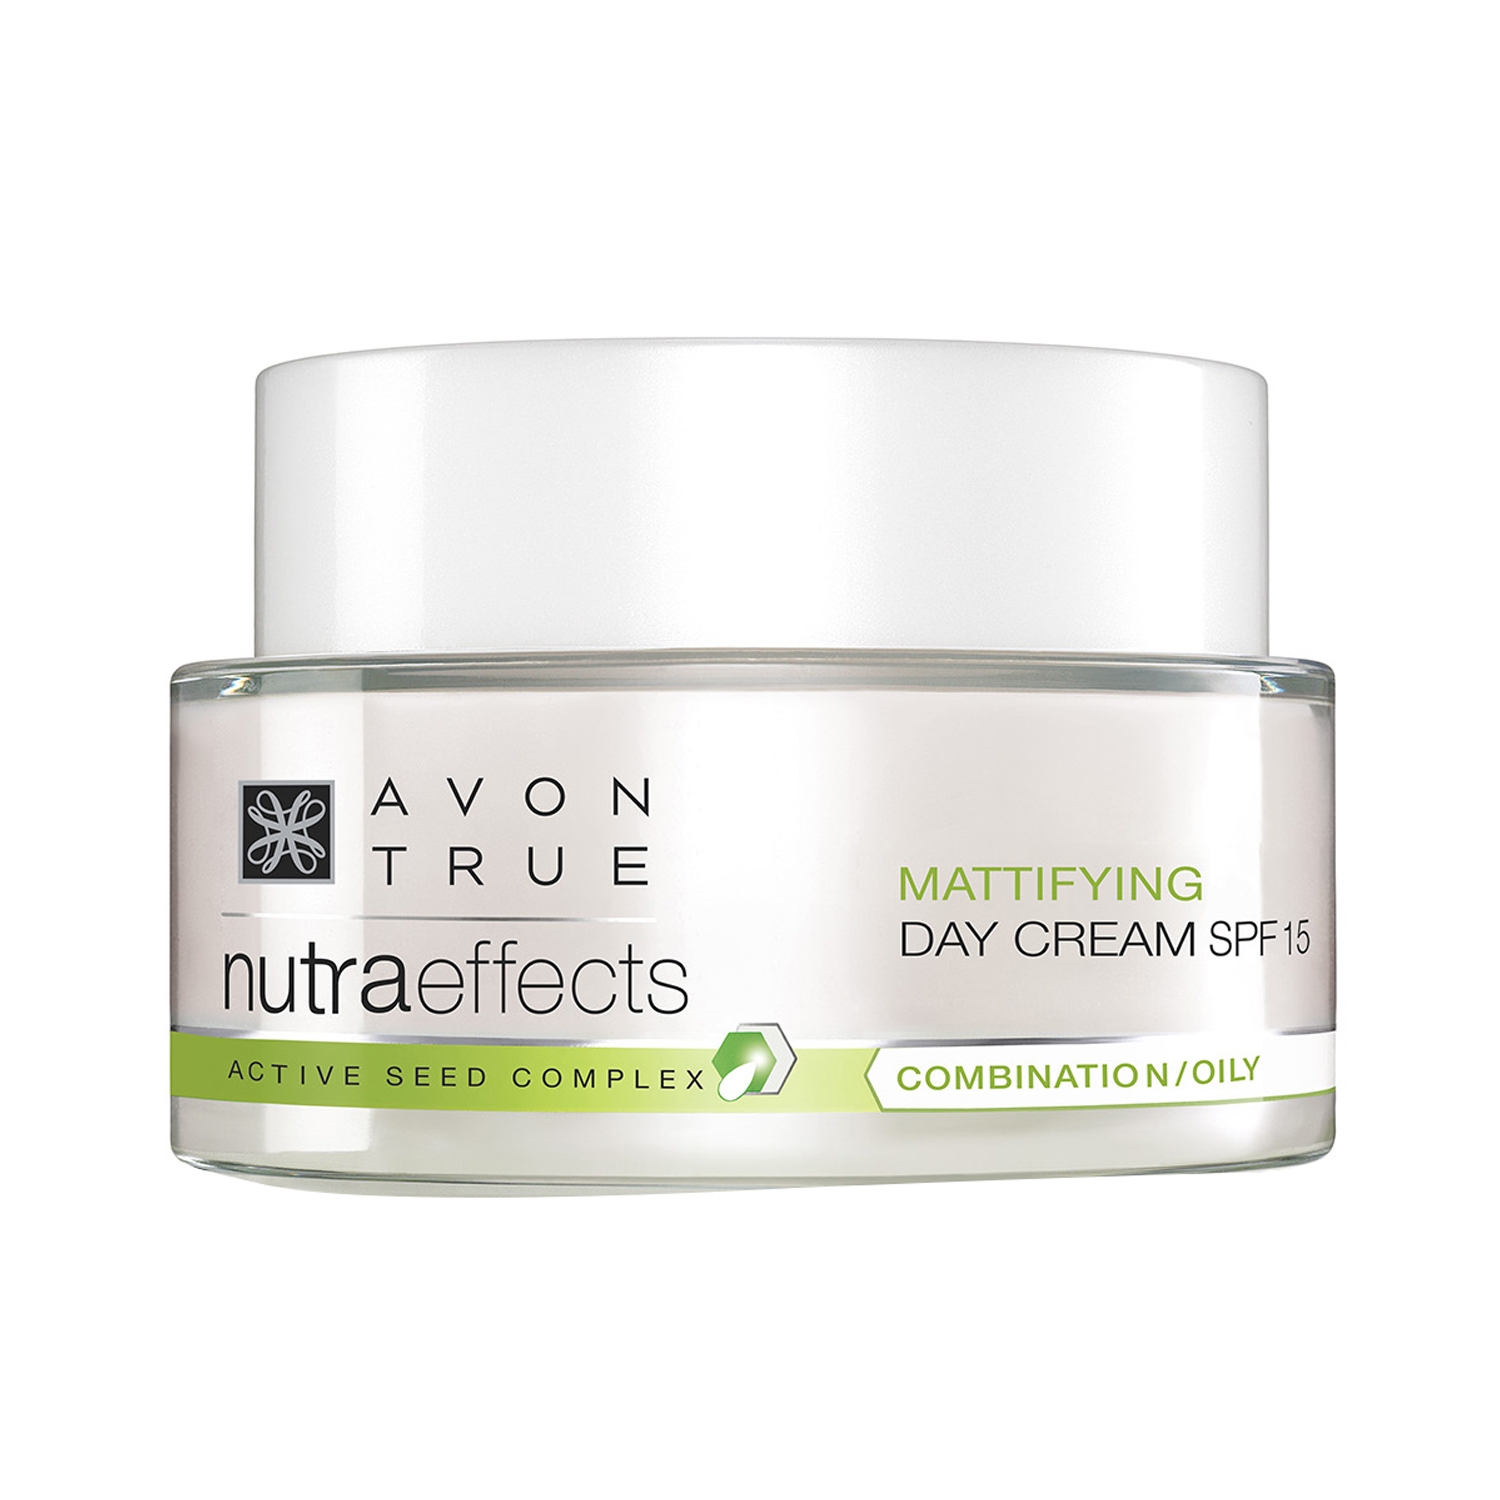 Avon | Avon True Nutraeffects Mattifying Day Cream SPF 15 (50g)